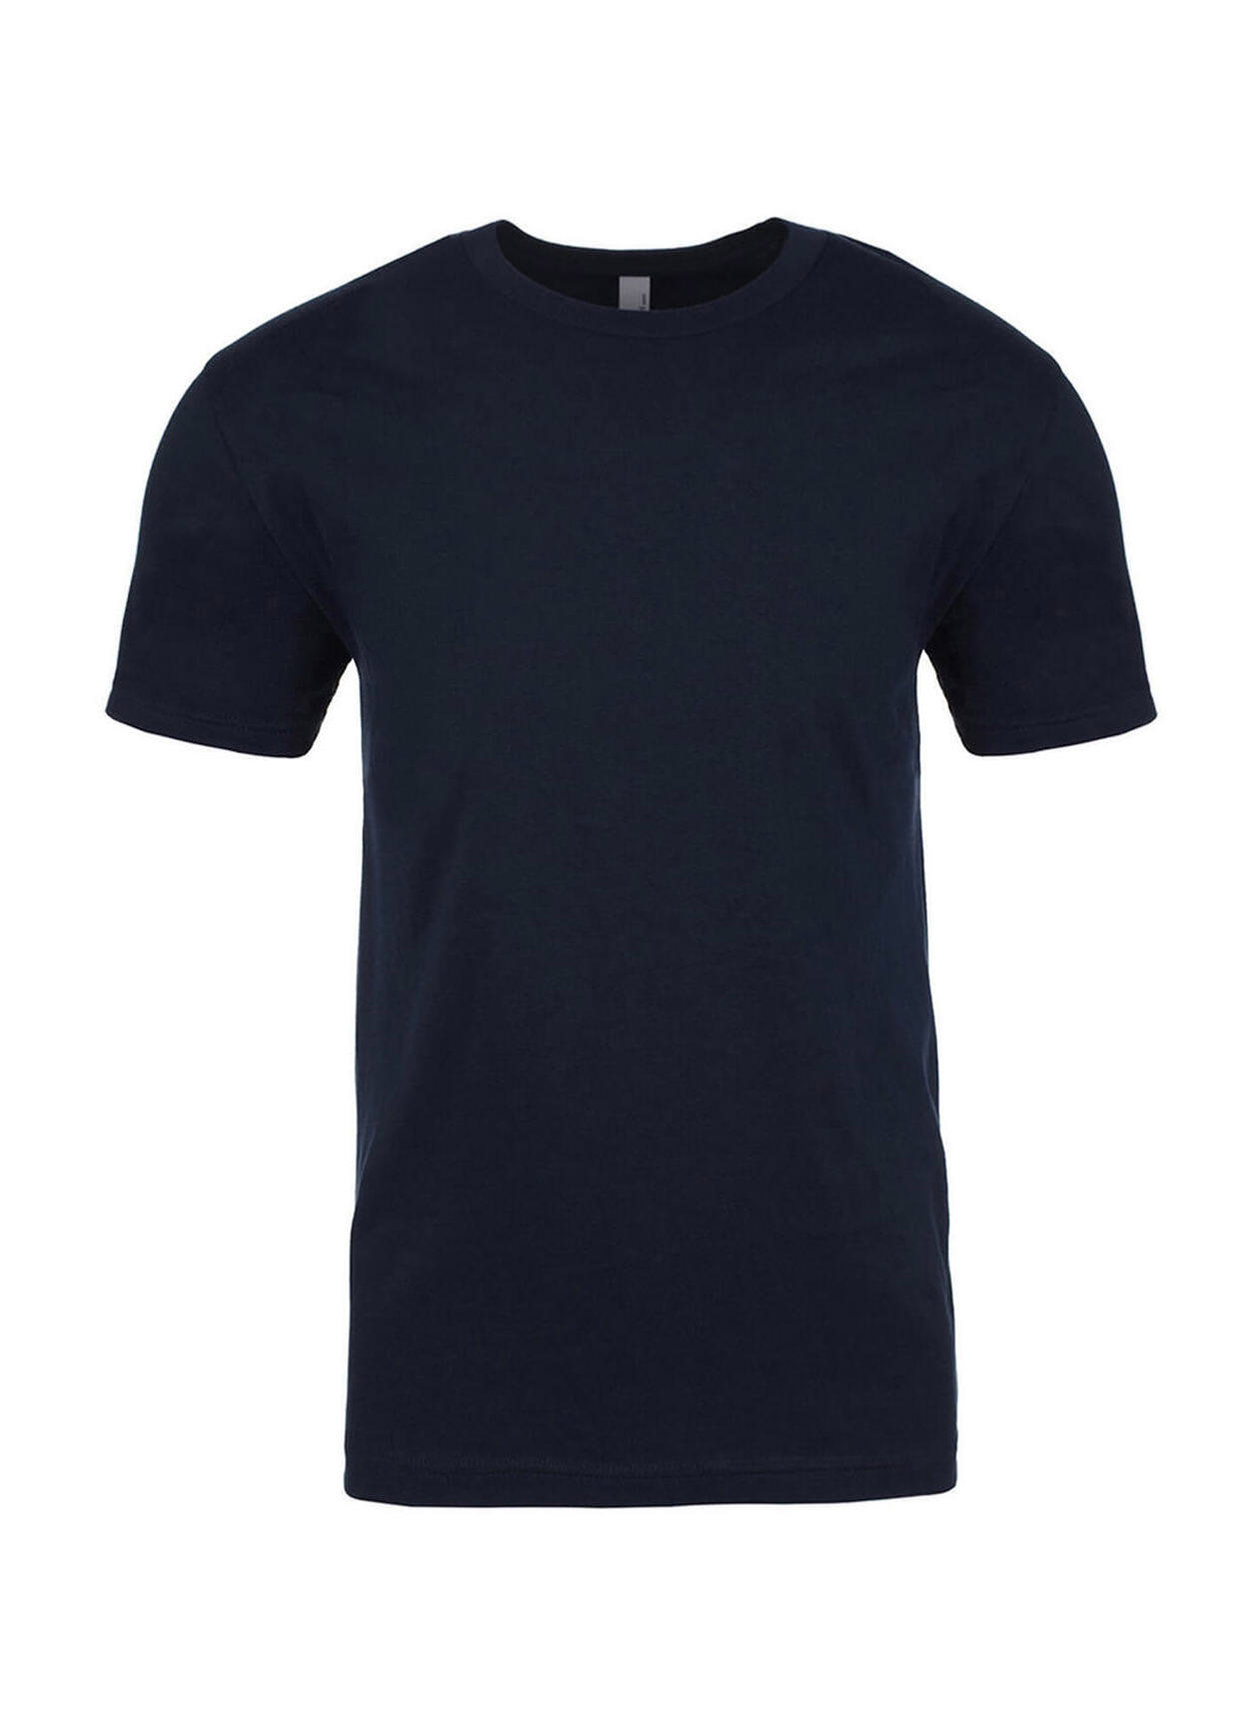 Next Level Men's Midnight Navy Unisex Cotton T-Shirt